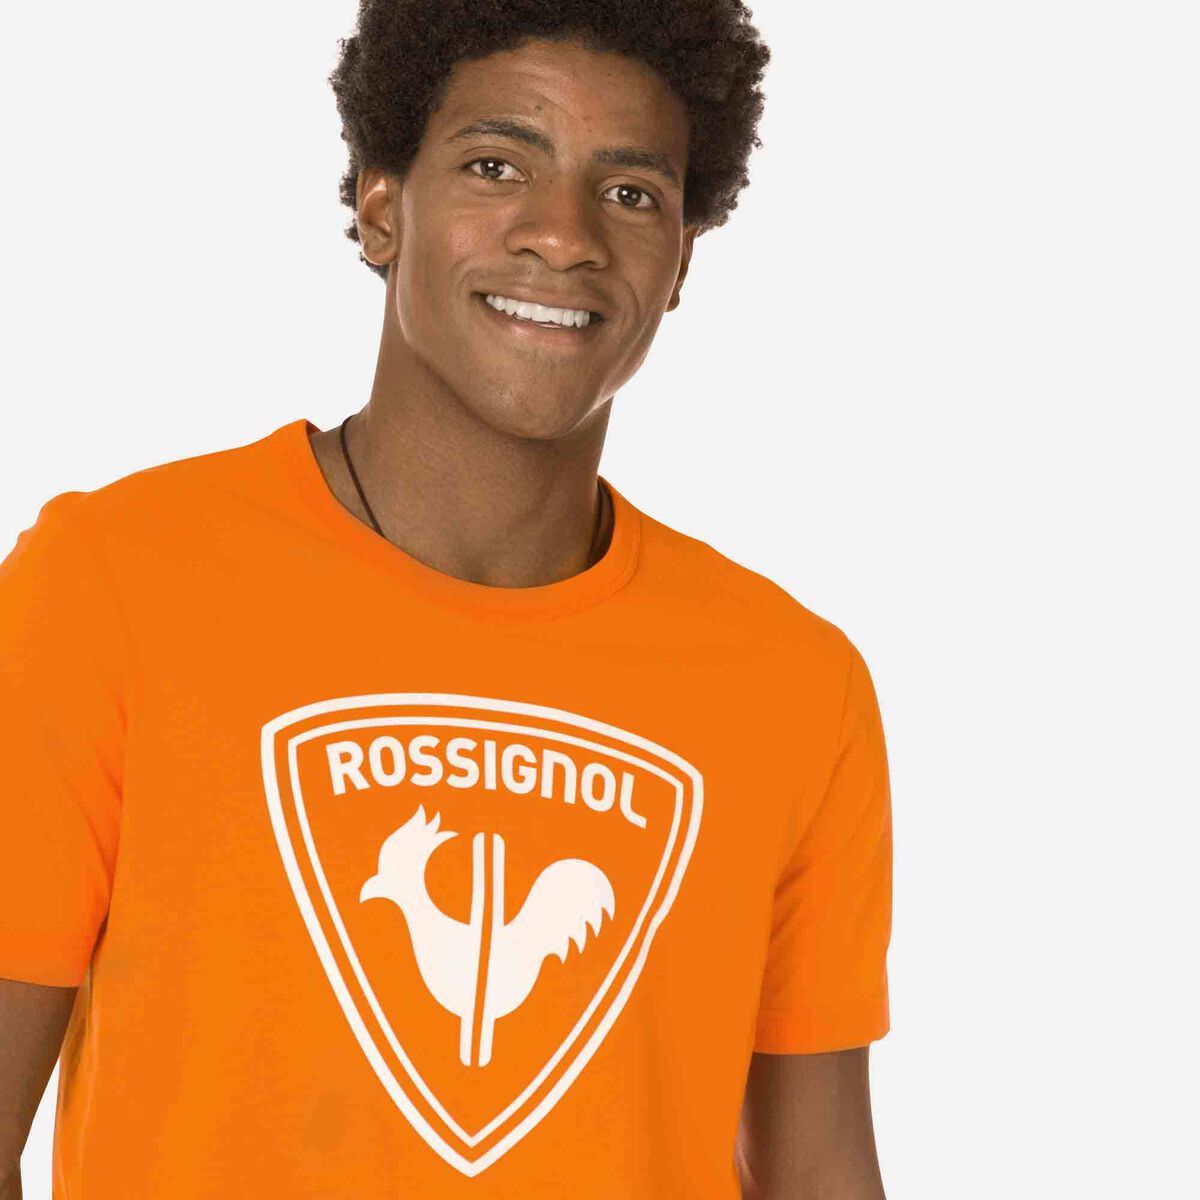 Logo Rossignol Herren-T-Shirt